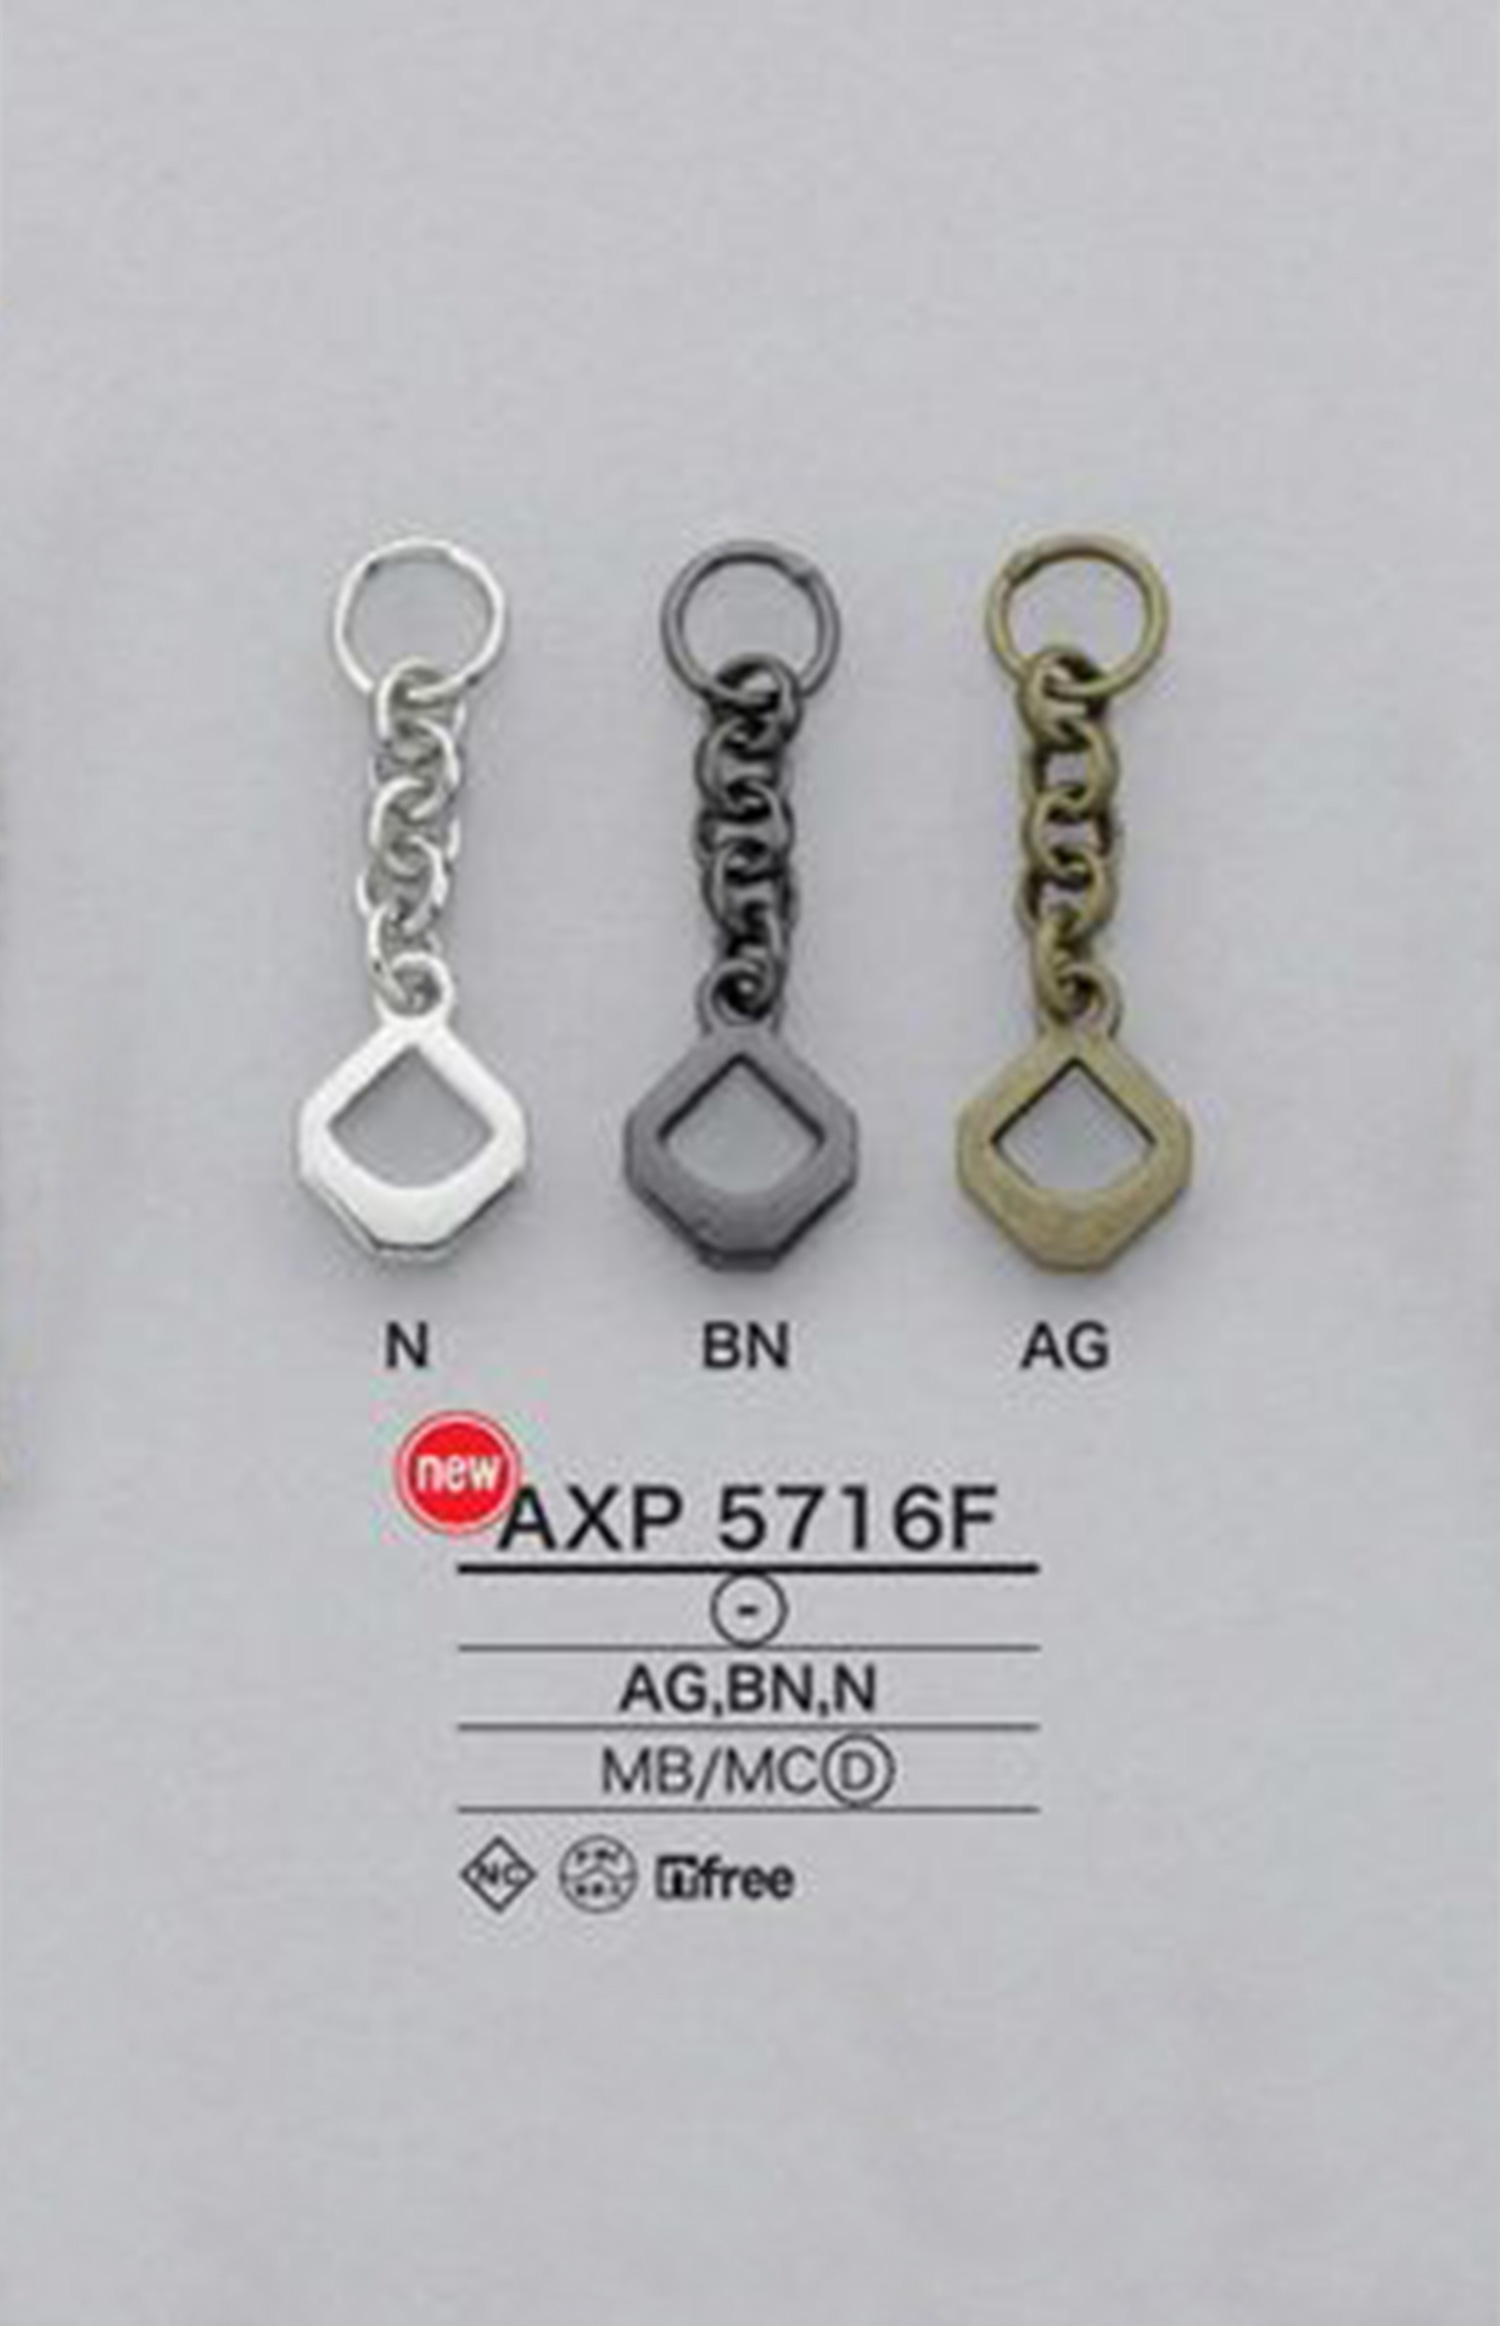 AXP5716F Kettenreißverschlusspunkt (Zuglasche)[Reißverschluss] IRIS